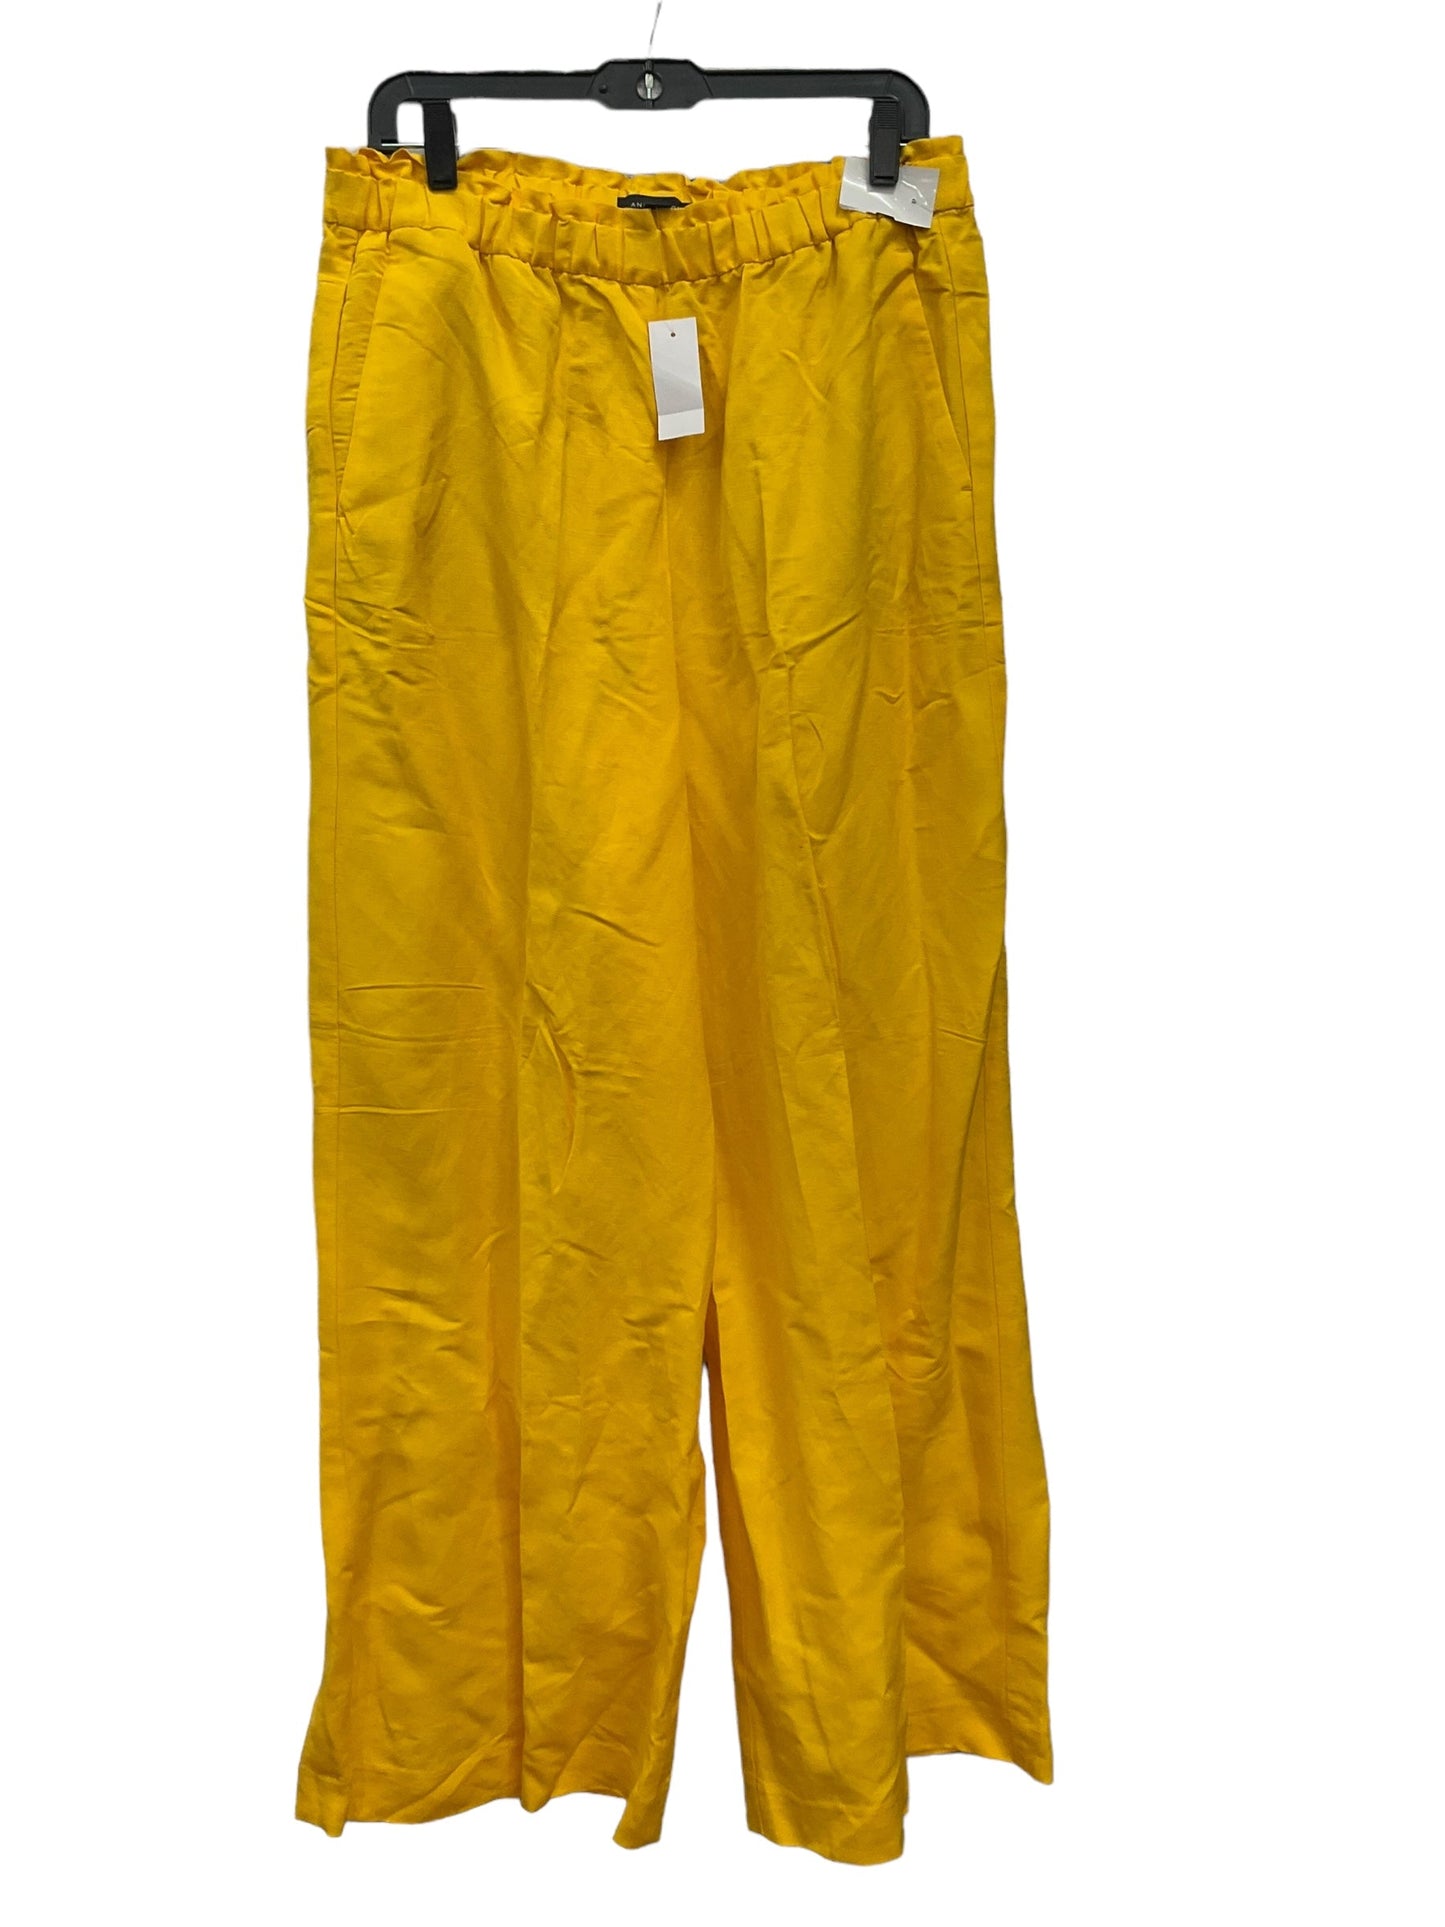 Yellow Pants Dress Ann Taylor, Size L